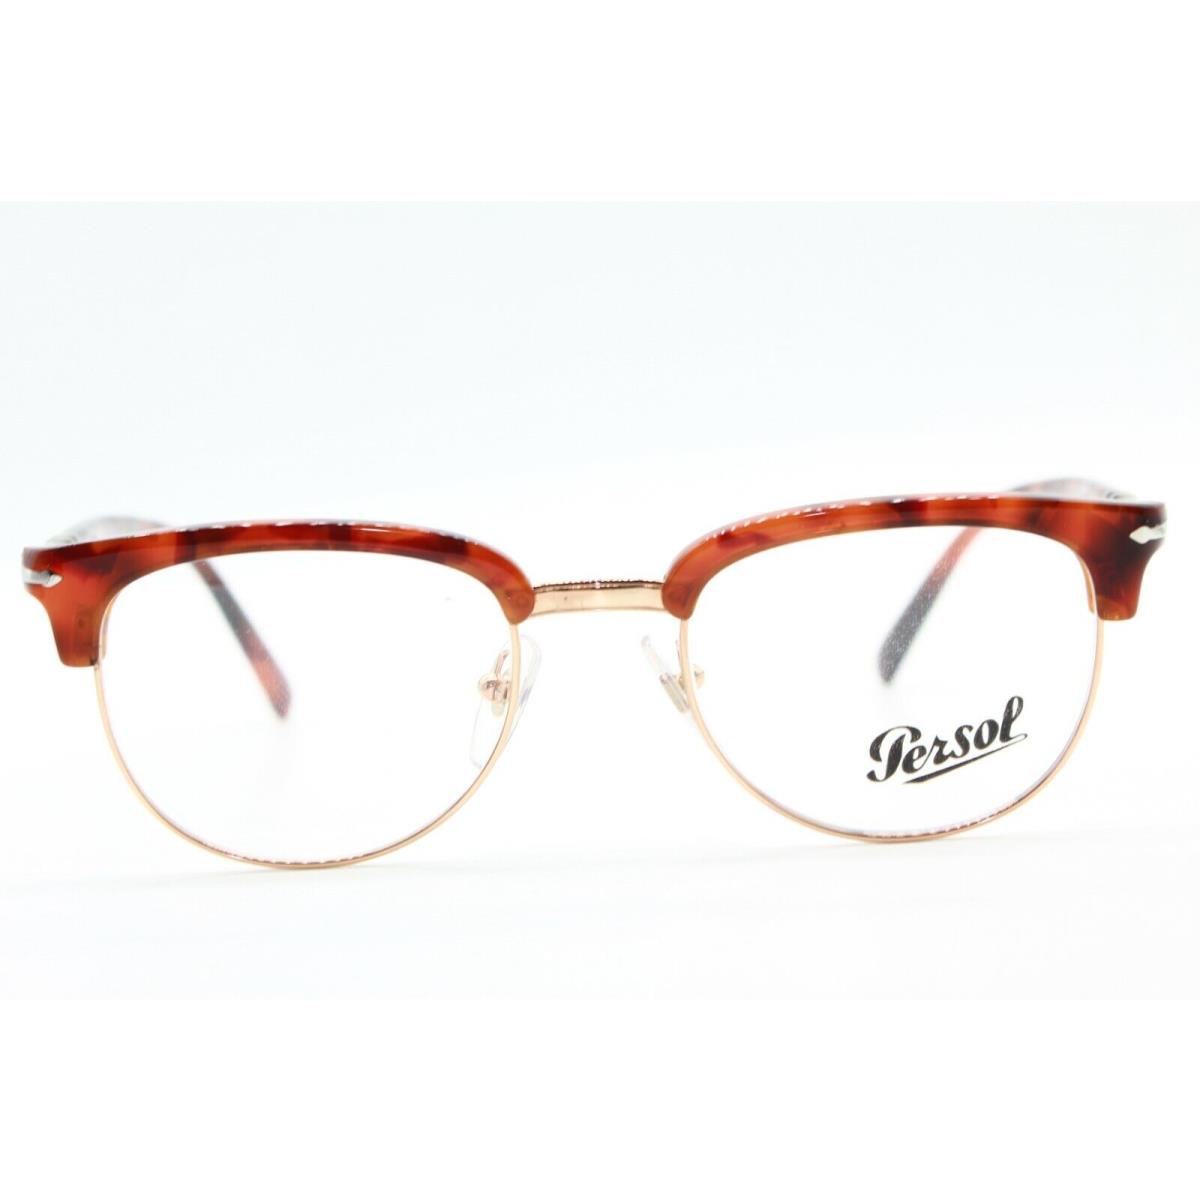 Persol eyeglasses  - BLONDE HAVANA-GOLD Frame